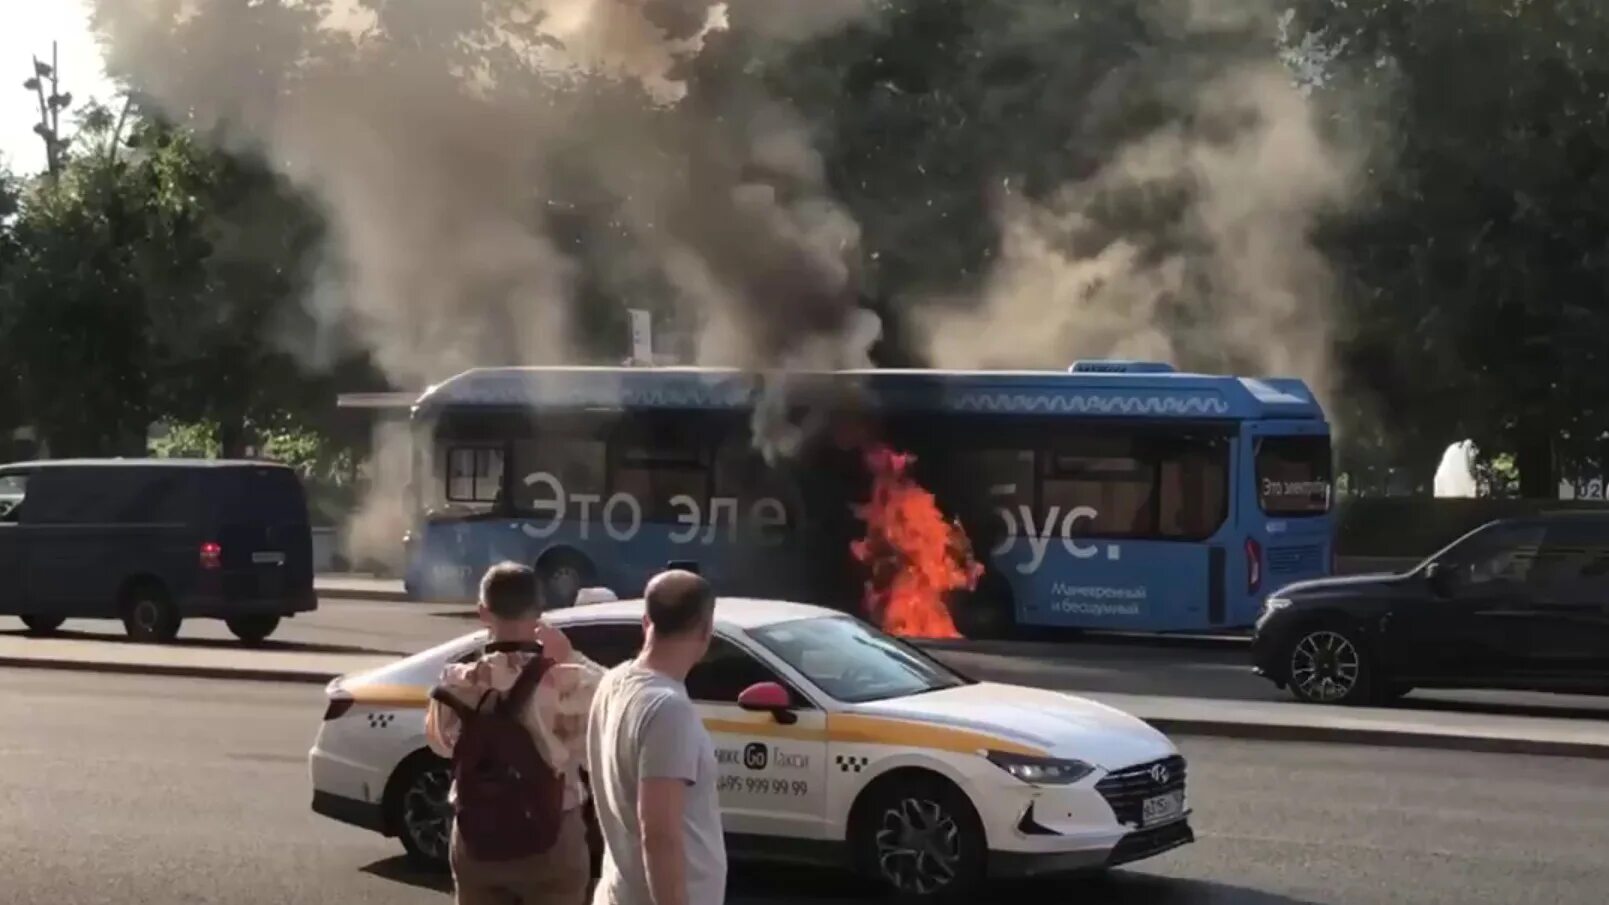 6 августа 2021. Электробус пожар. Сгорел электробус в Москве сегодня.